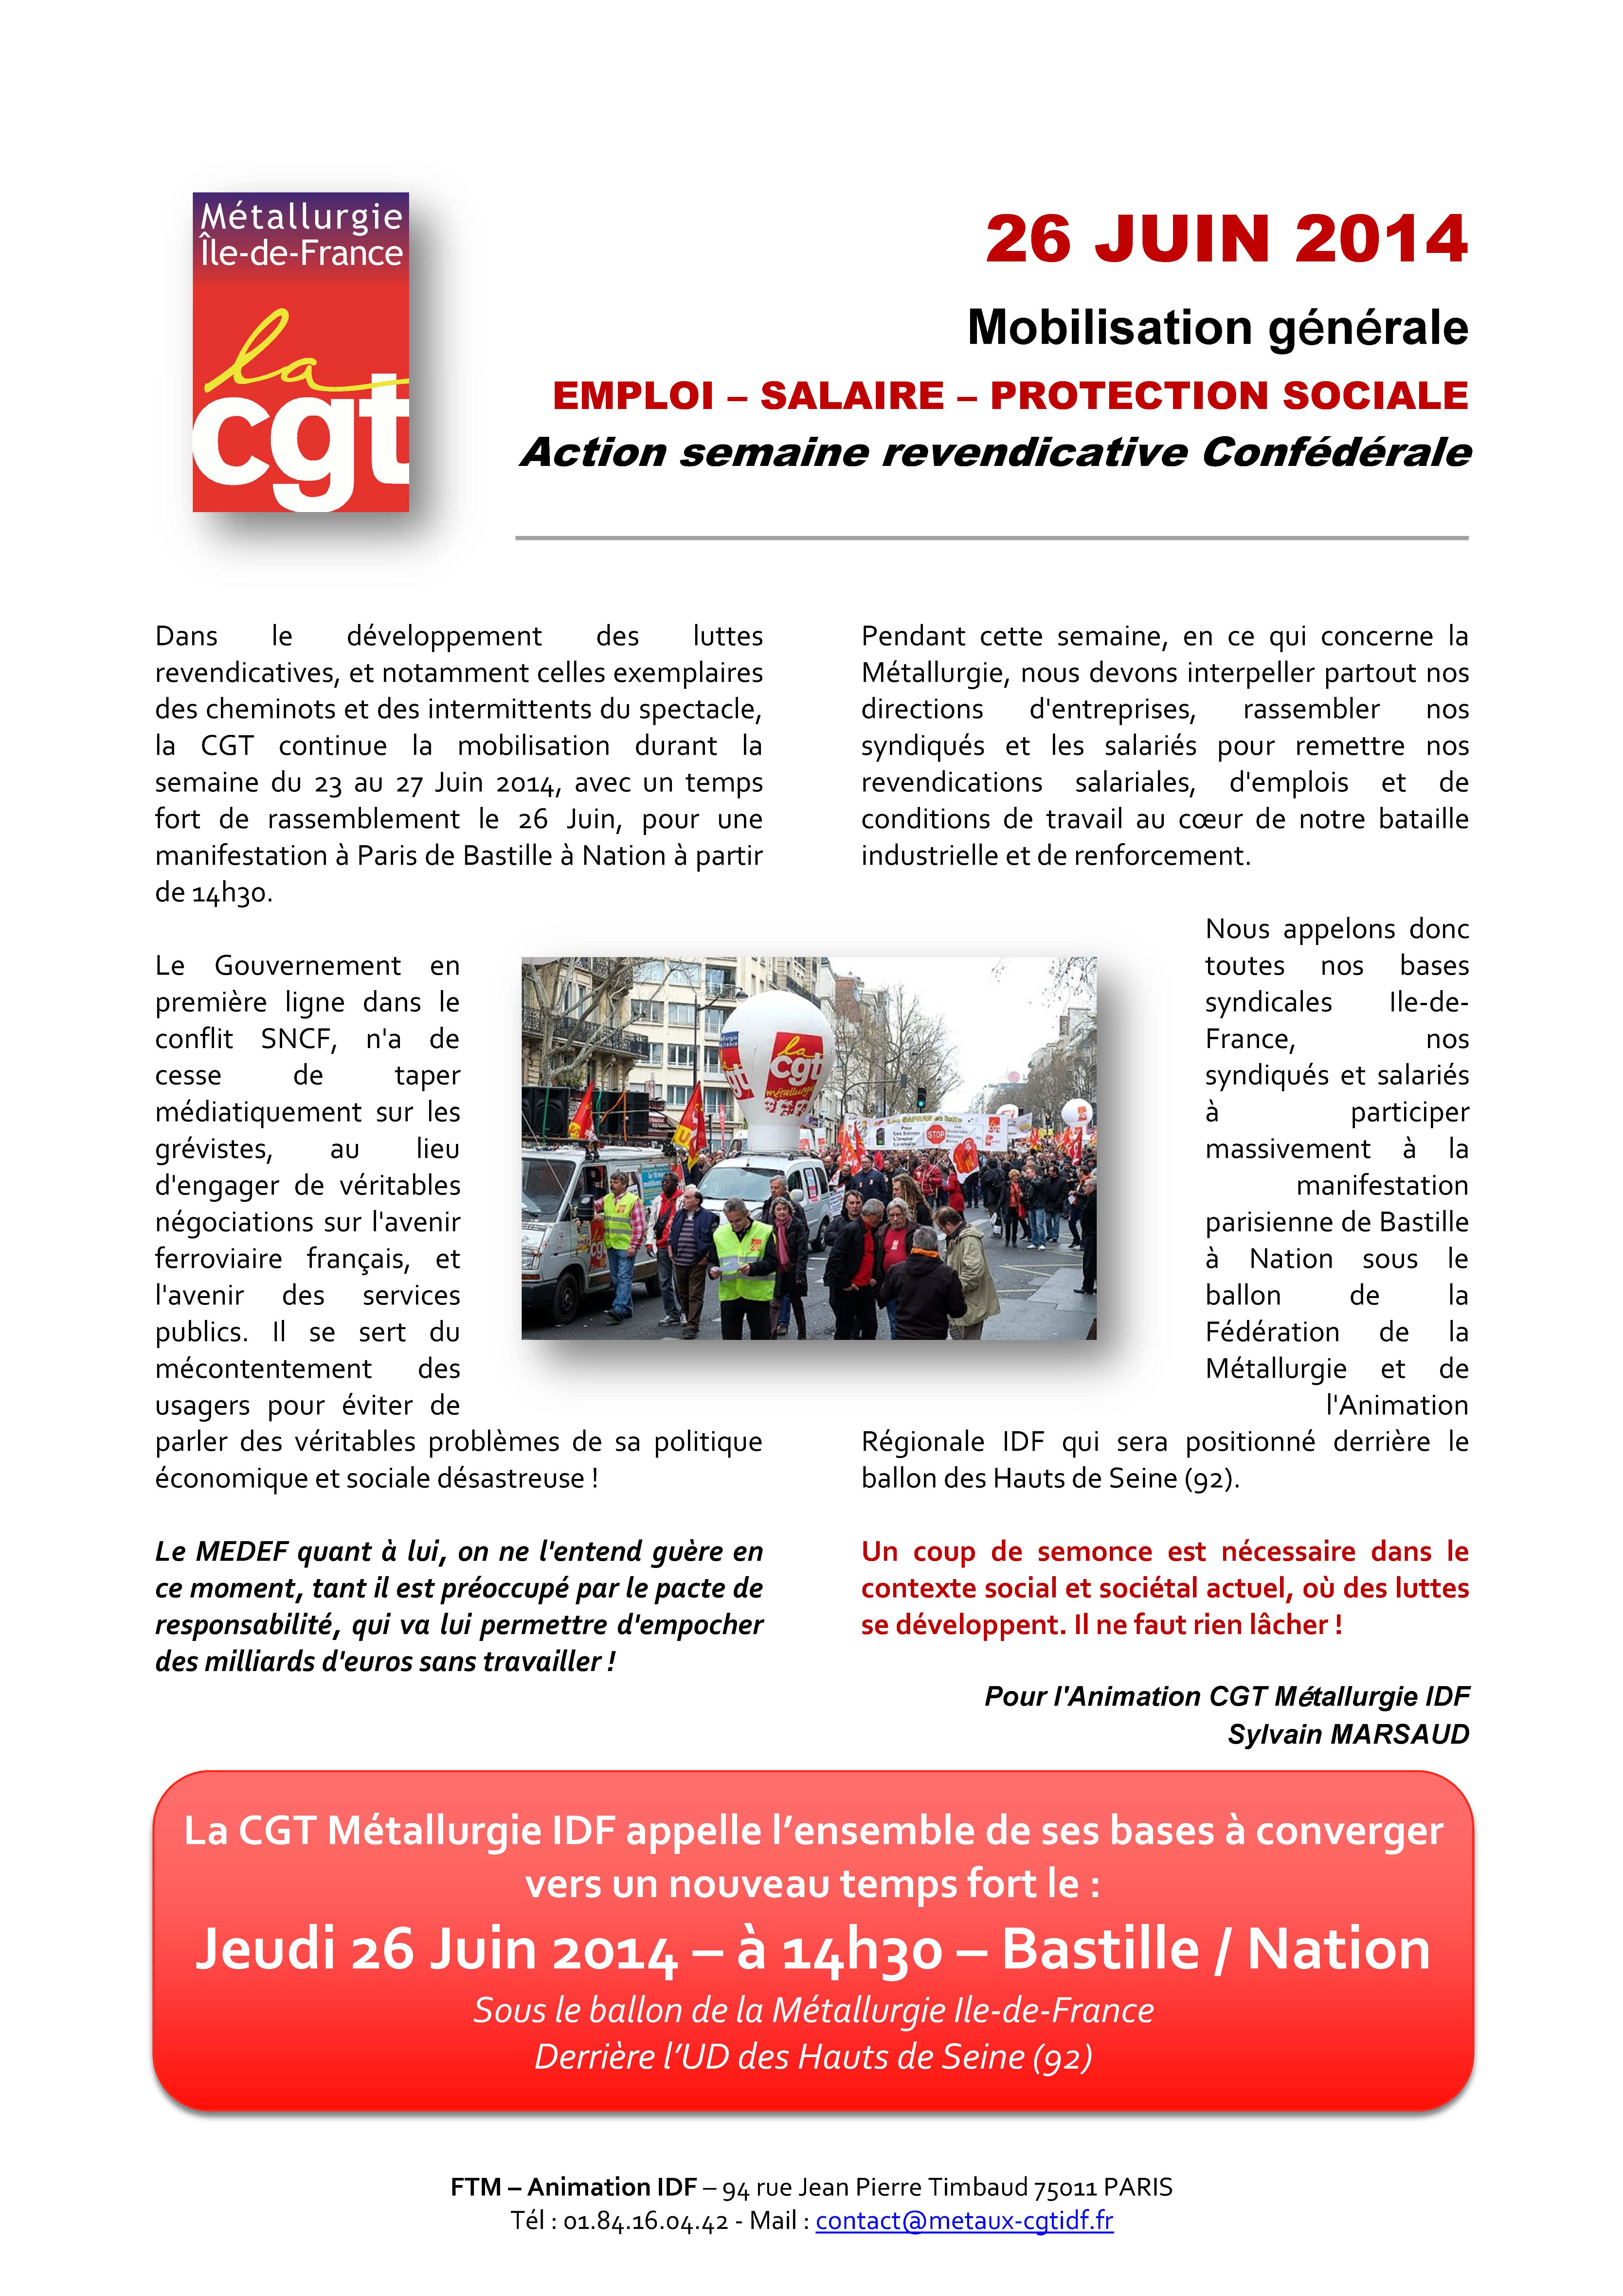 Mobilisation Générale du 26 Juin 2014